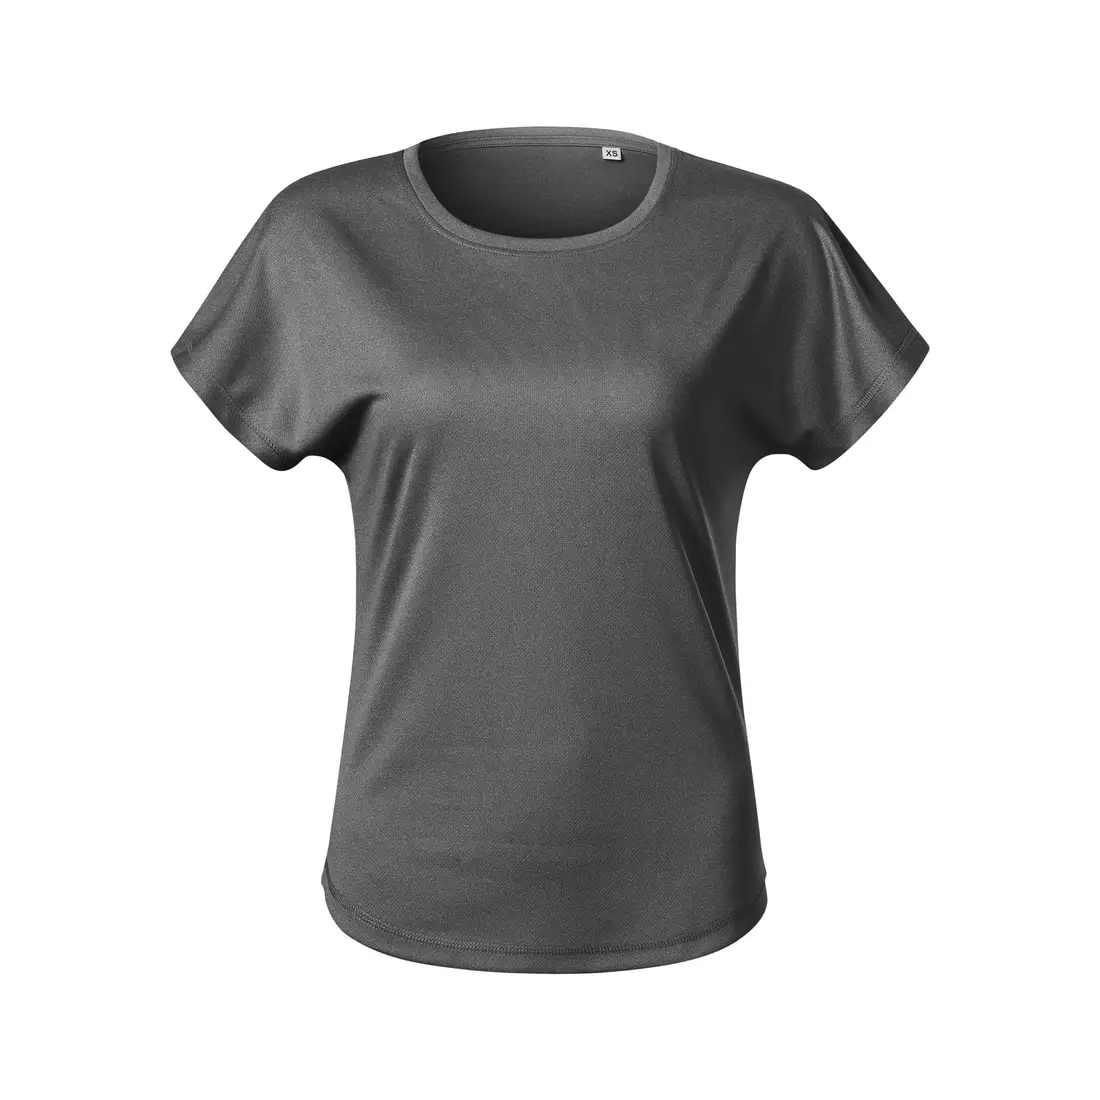 MALFINI CHANCE GRS Női sport póló, rövid ujjú, újrahasznosított mikropoliészter, fekete melírozott 811M112